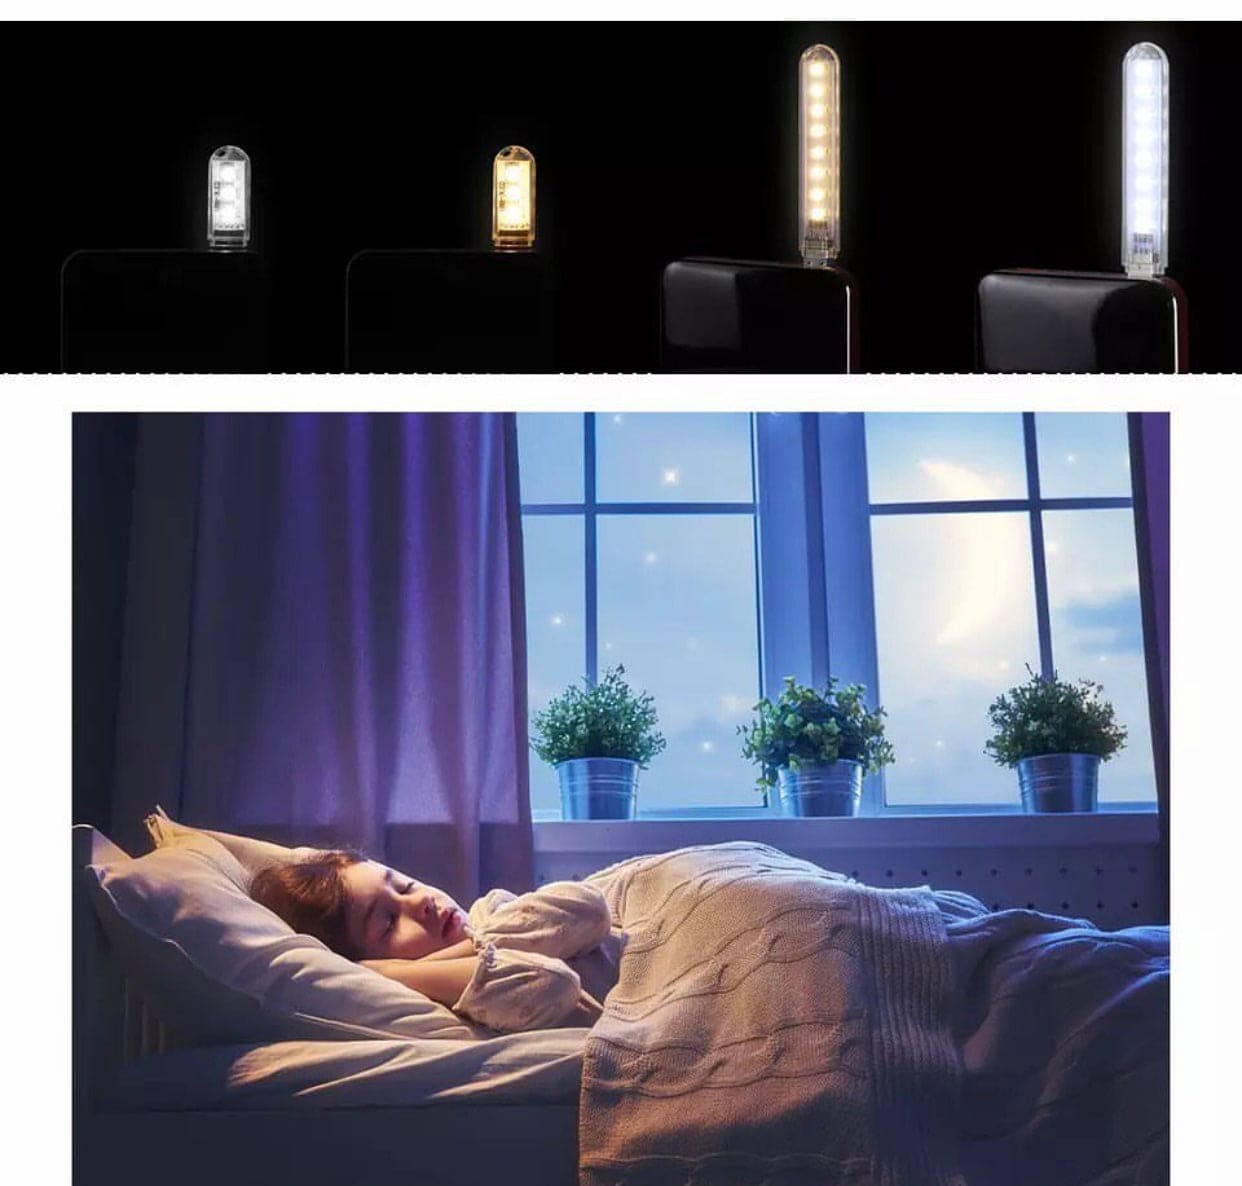 5V Mini USB Strip Night Light, Led Book Lamp Light, USB LED Night Light, Desk Table Reading Lamp, White Warm Night Light